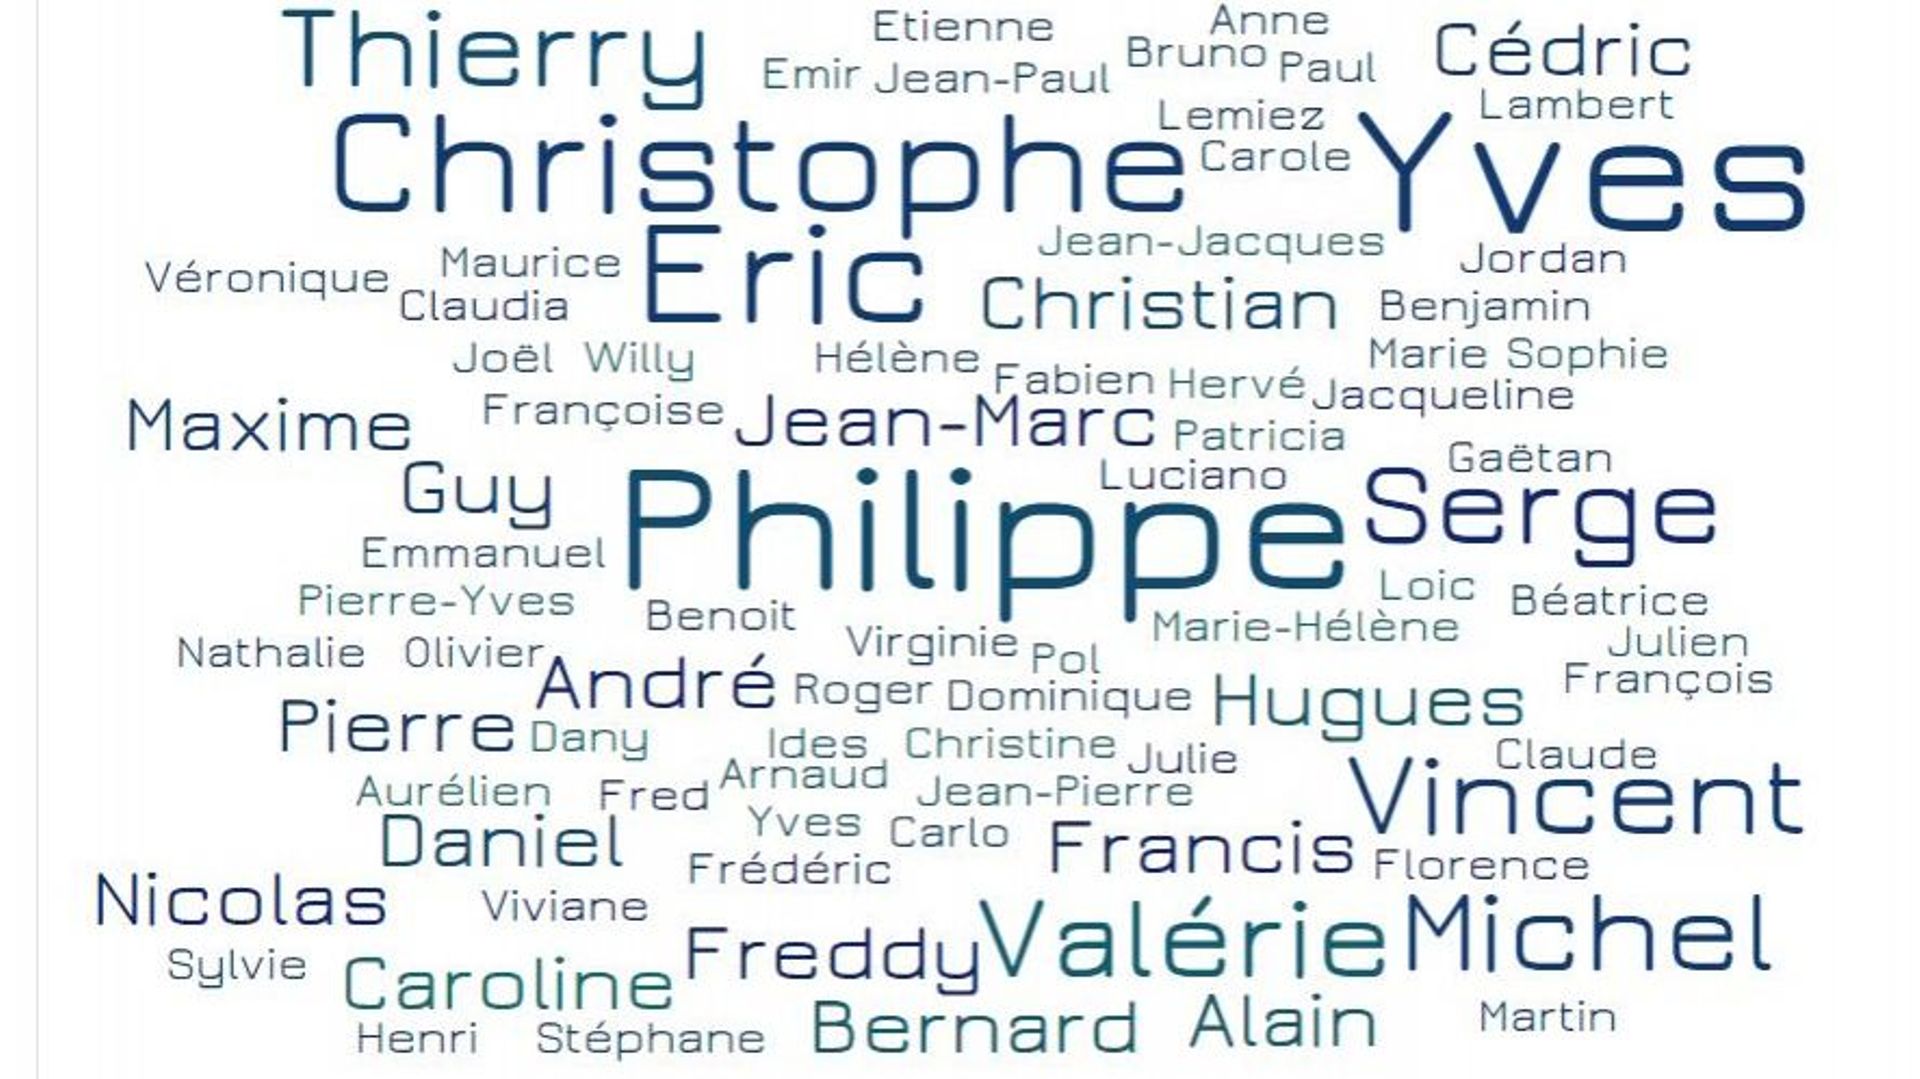 Le prénom qui revient le plus souvent chez les bourgmestres, c'est Philippe. Ci-dessus, une représentation de ces prénoms sous forme de "nuage de mots".